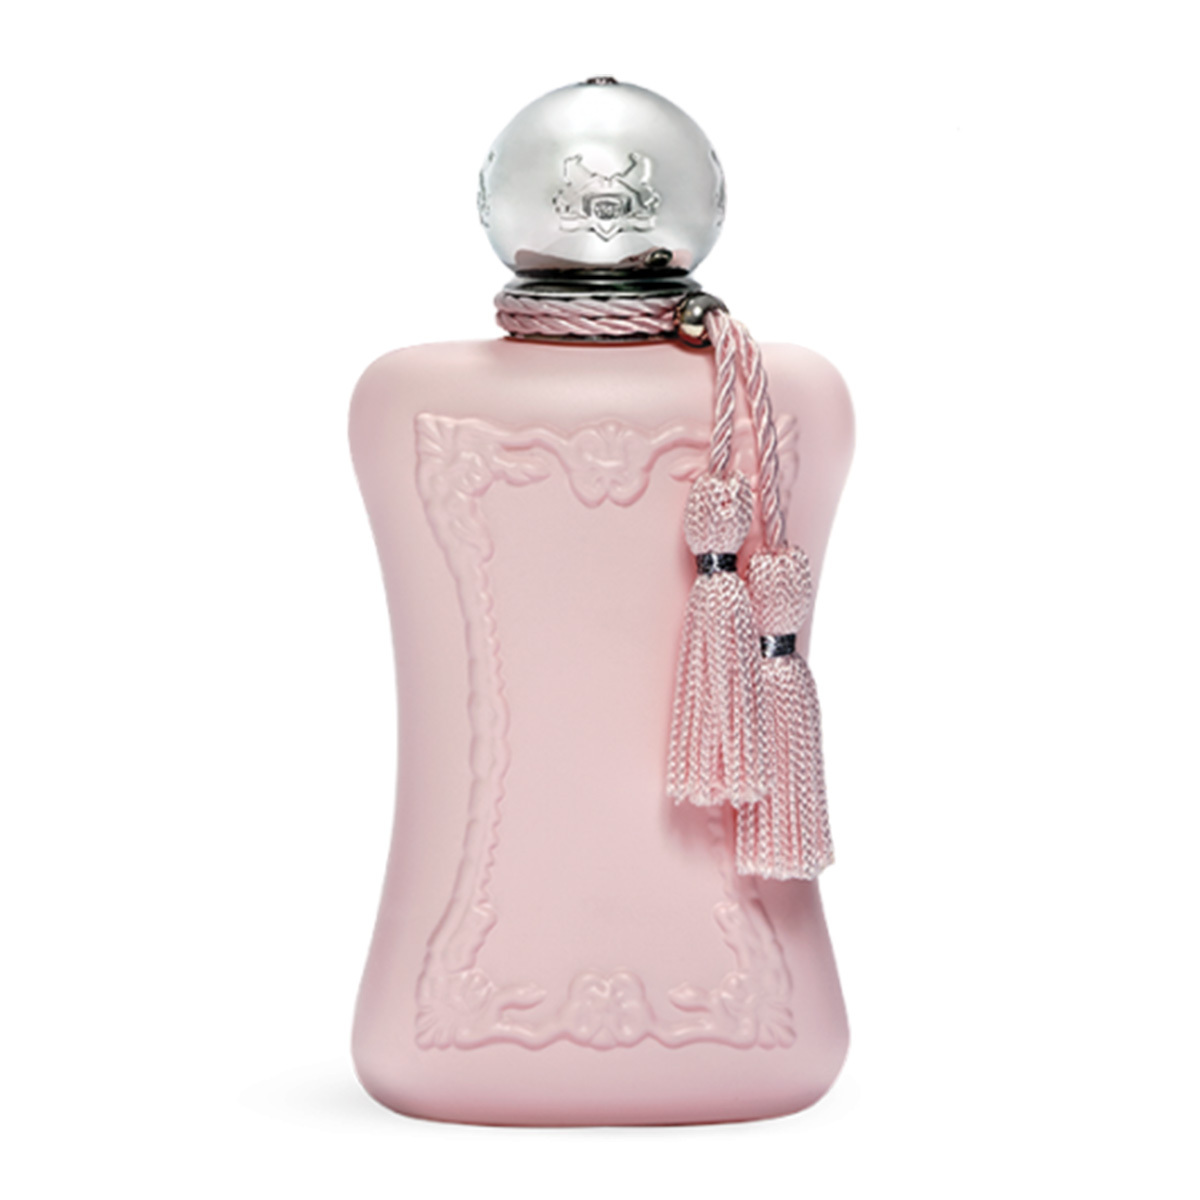 Купить Парфюмерная вода Parfums De Marly, Parfums De Marly Delina 75ml тестер, Франция